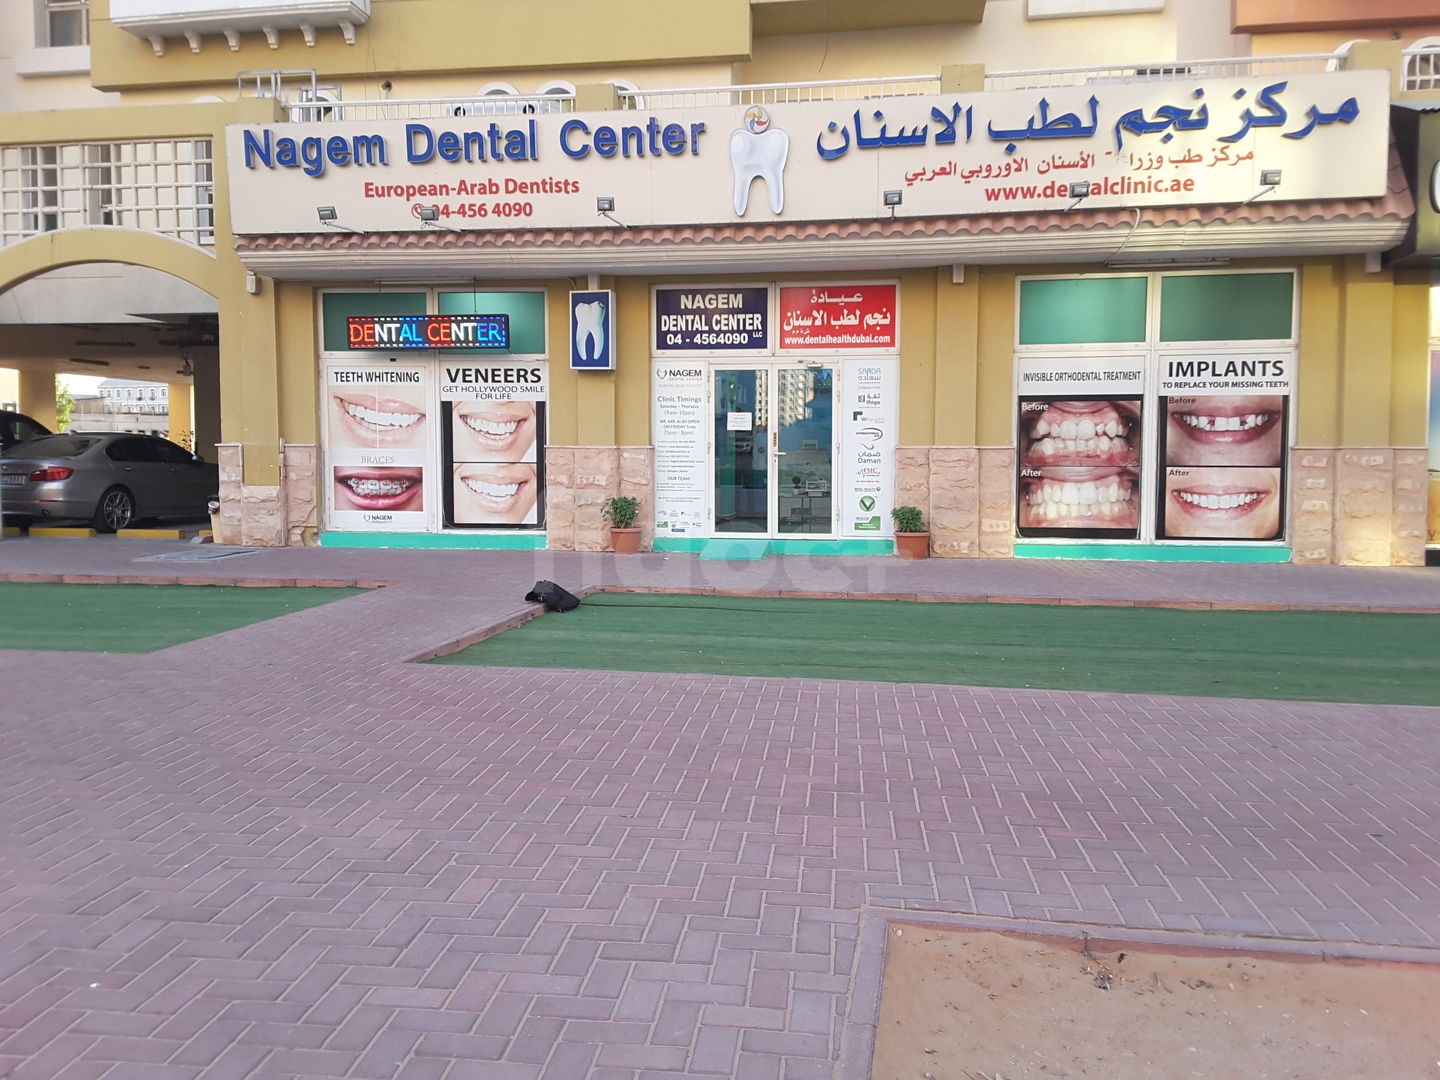 Nagem Dental Center, Dubai